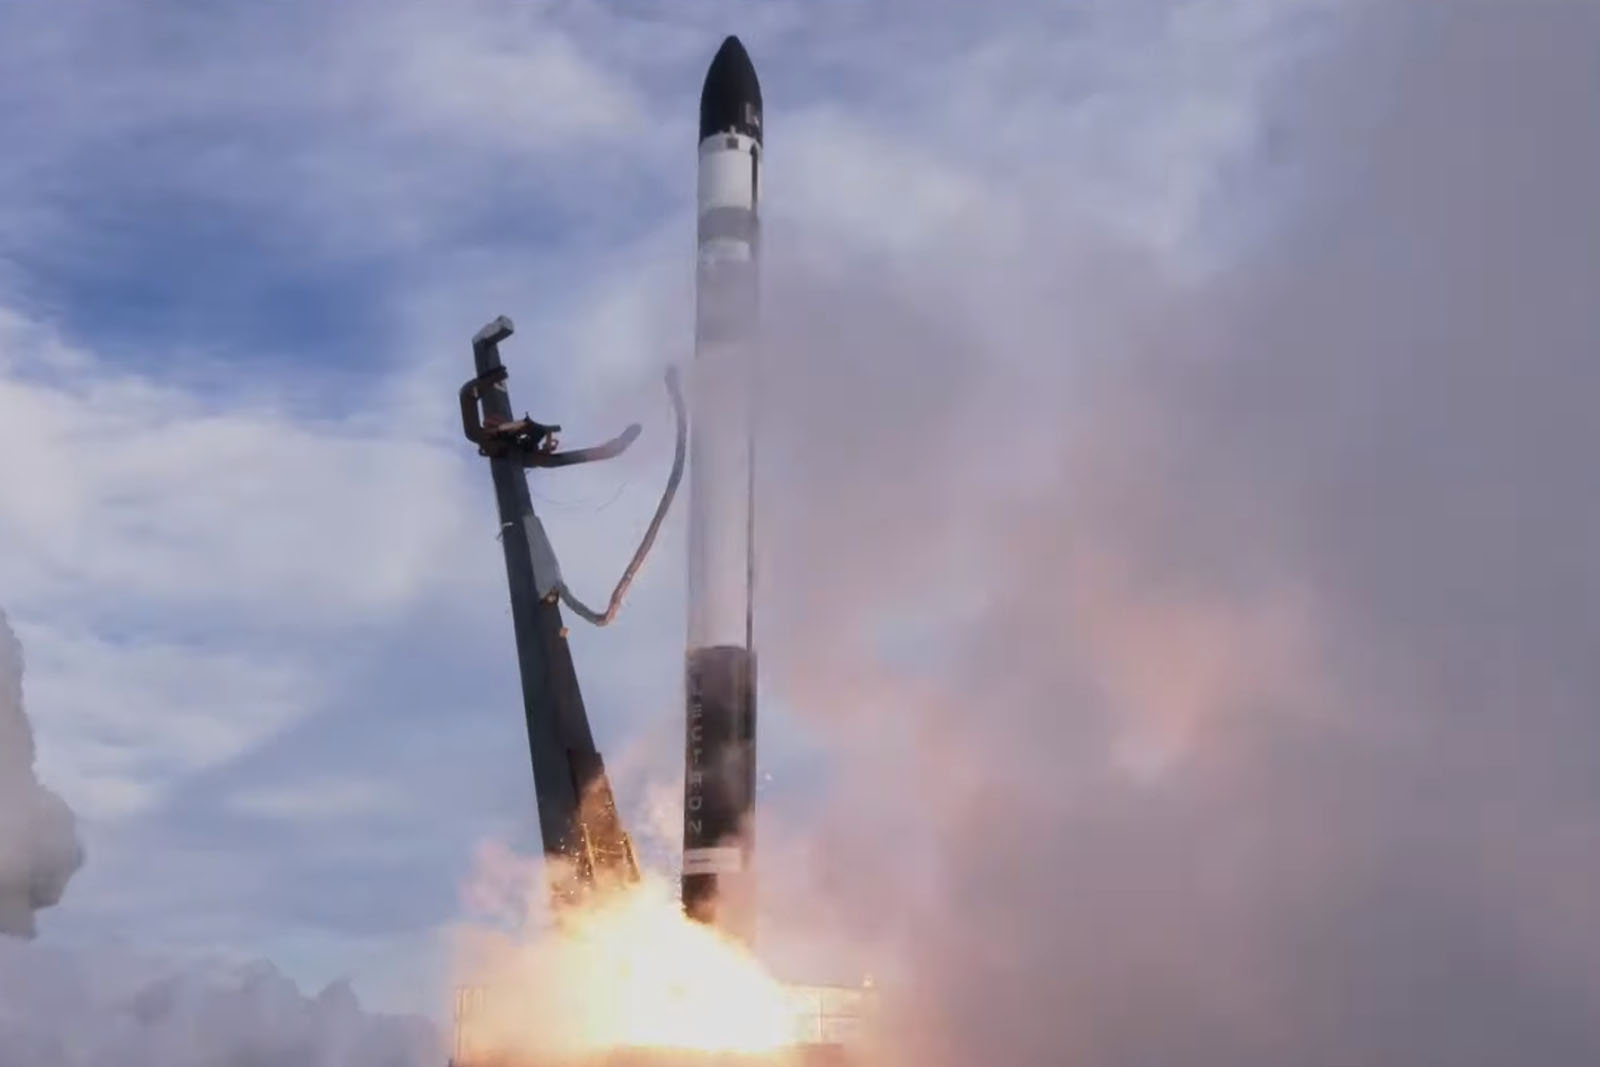 Rocket Labのロケット打上げ失敗、キヤノン電子の小型衛星など軌道投入できず